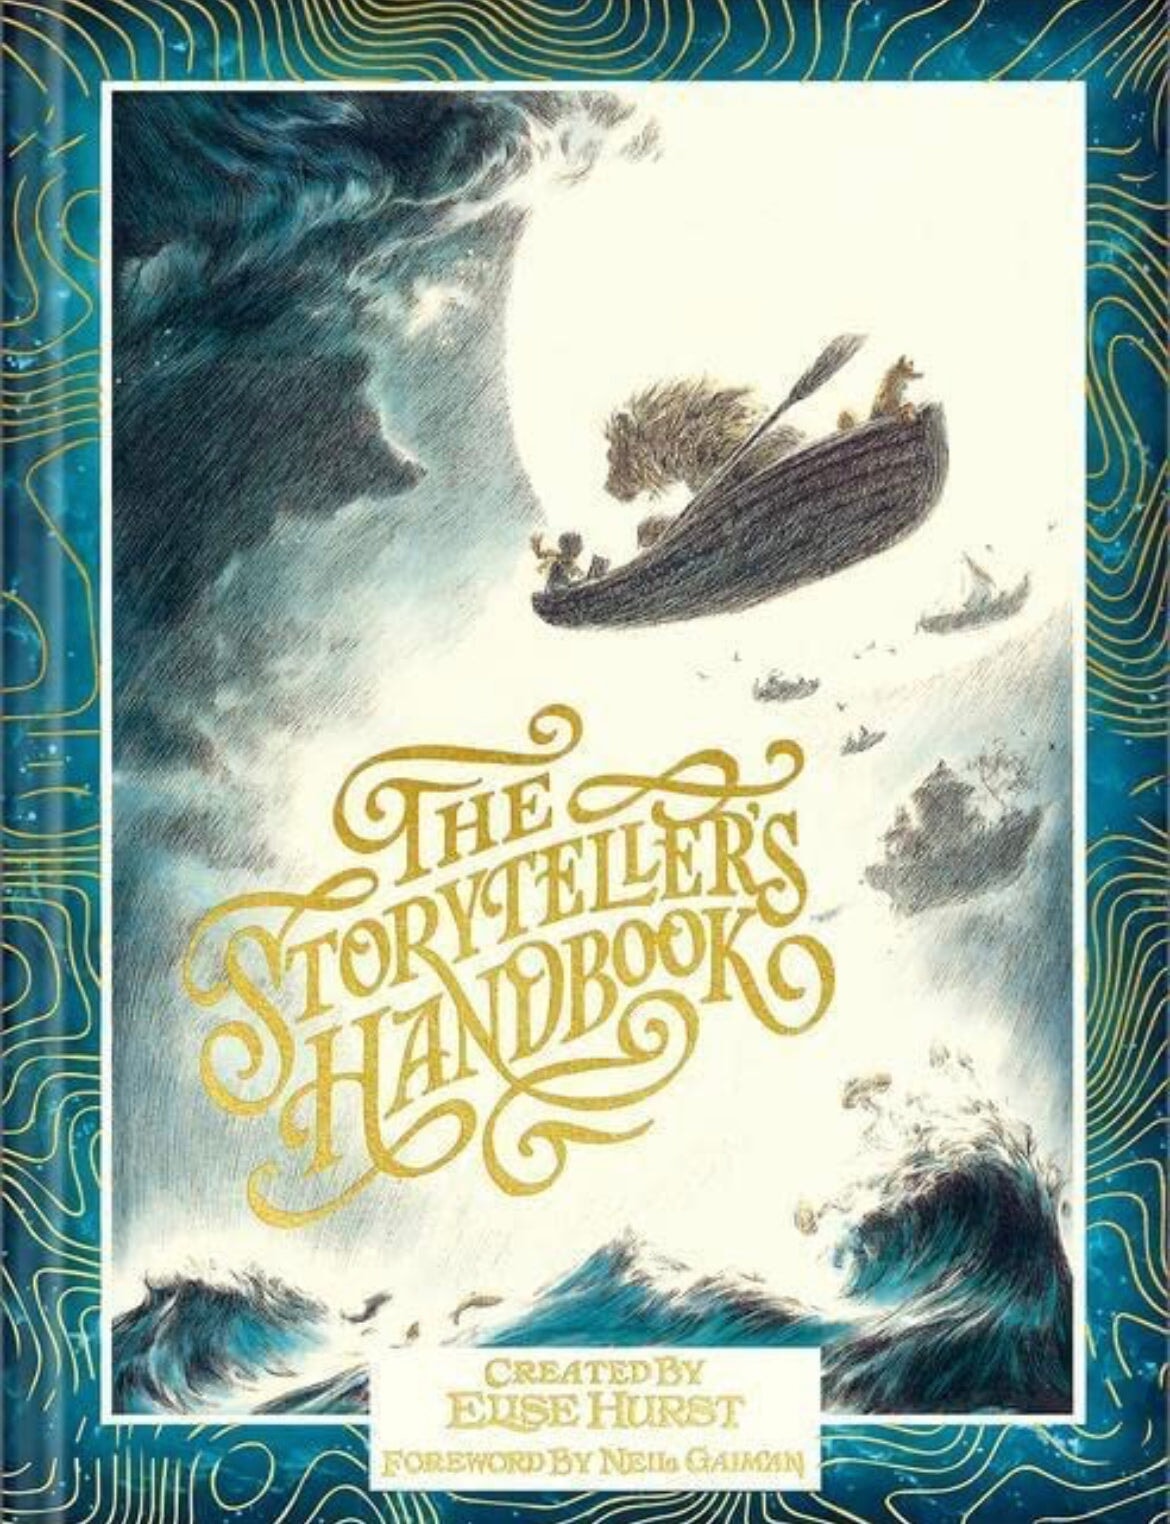 The Storytellers Handbook by Elise Hurst - Alder & Alouette